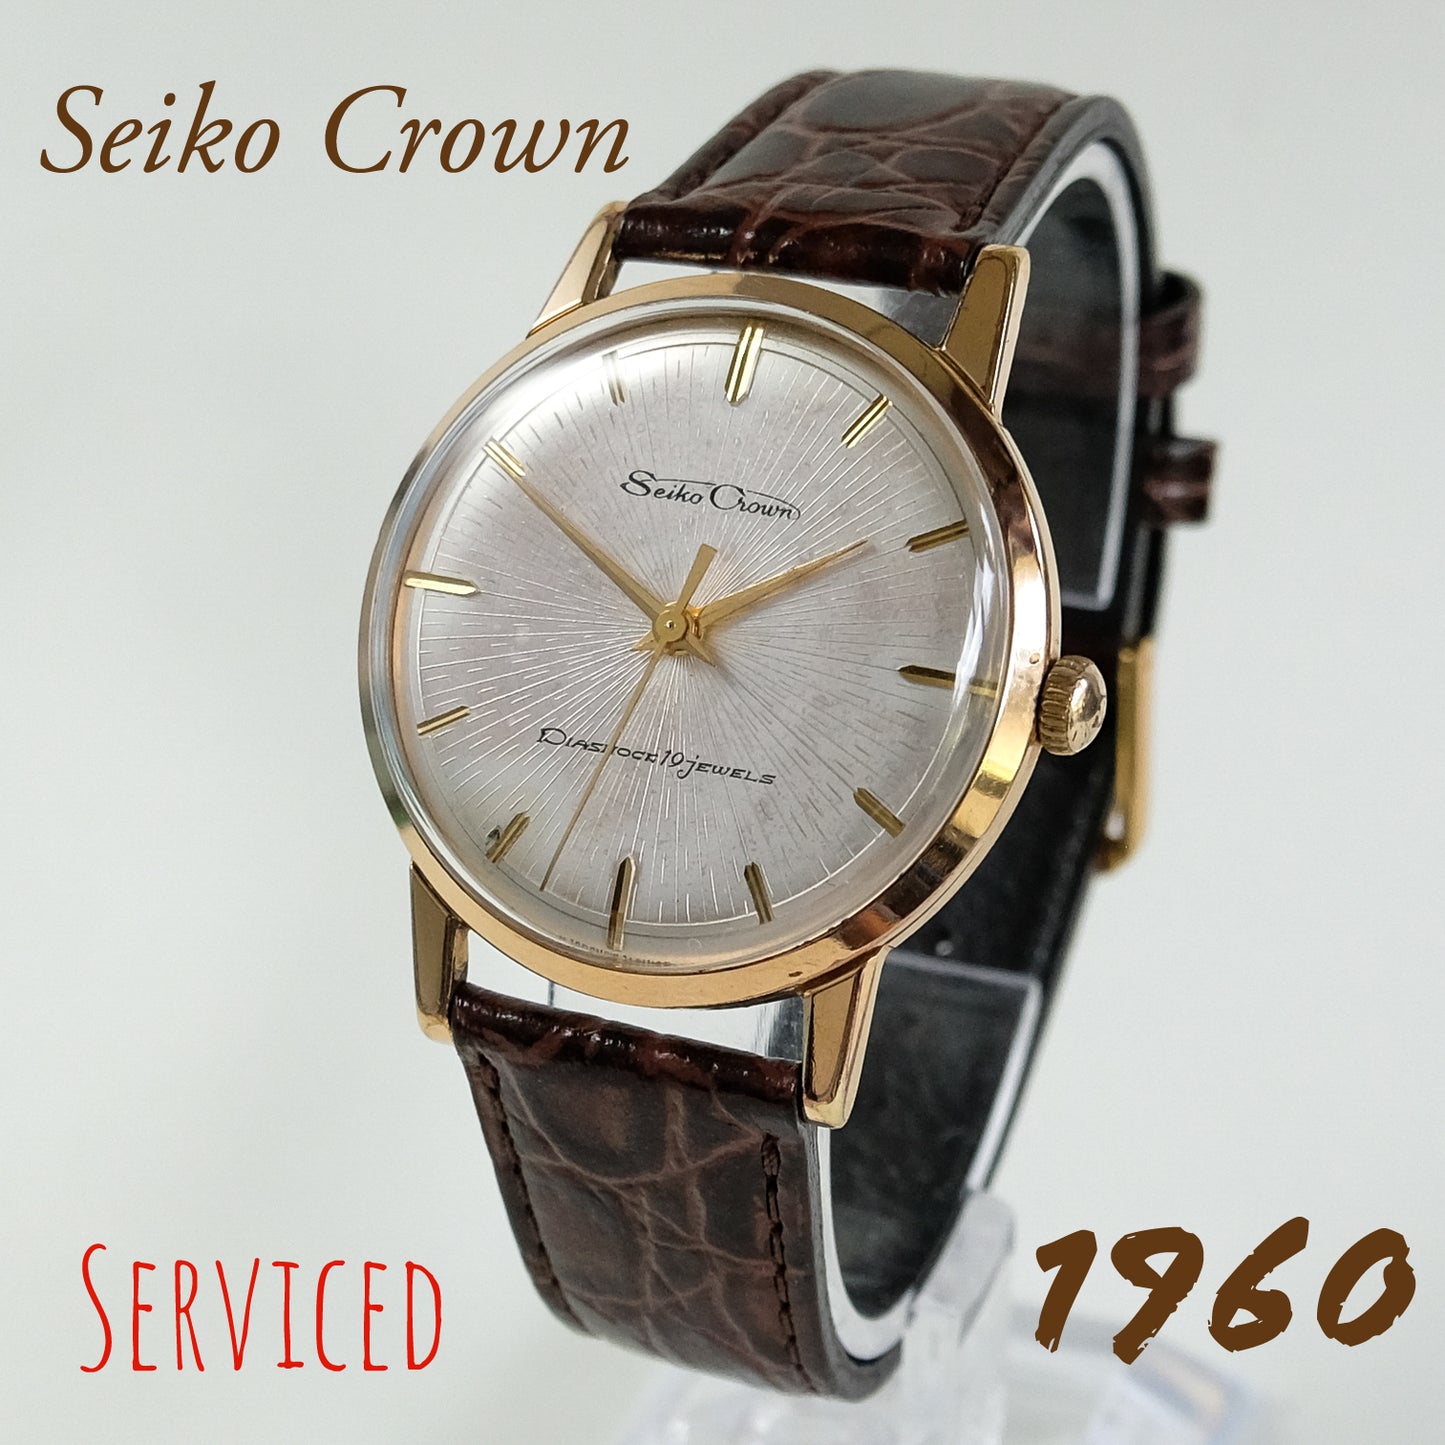 1960 Seiko Crown J14043